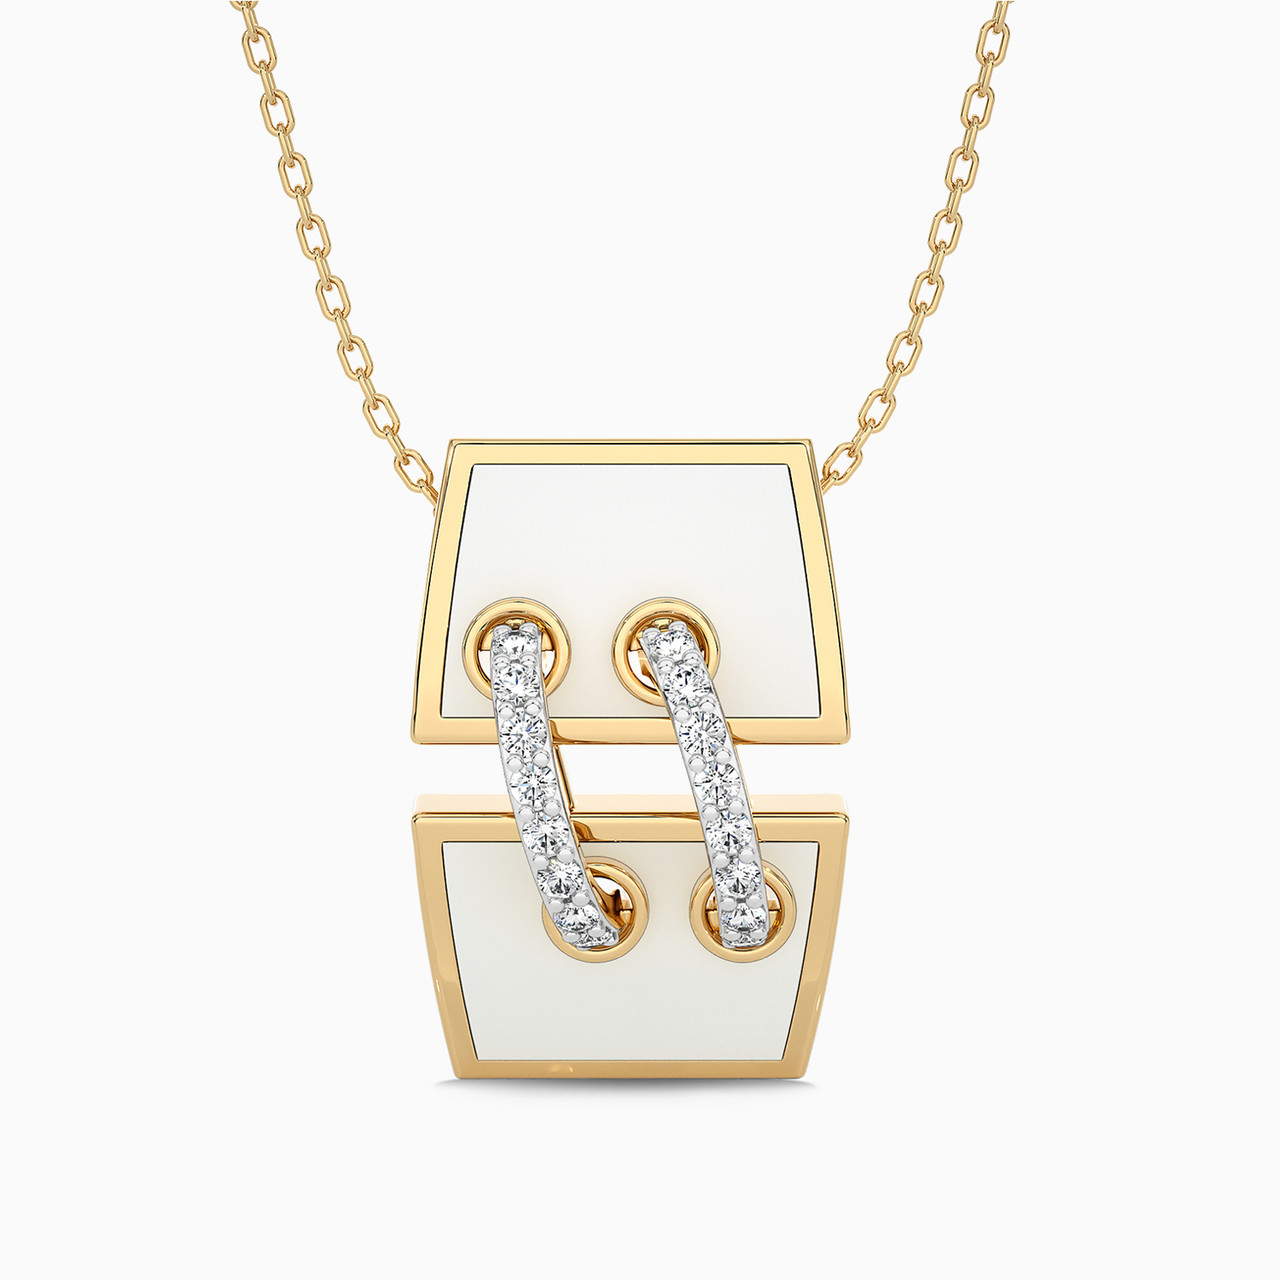 18K Gold Diamond & Enamel Coated Pendant Necklace